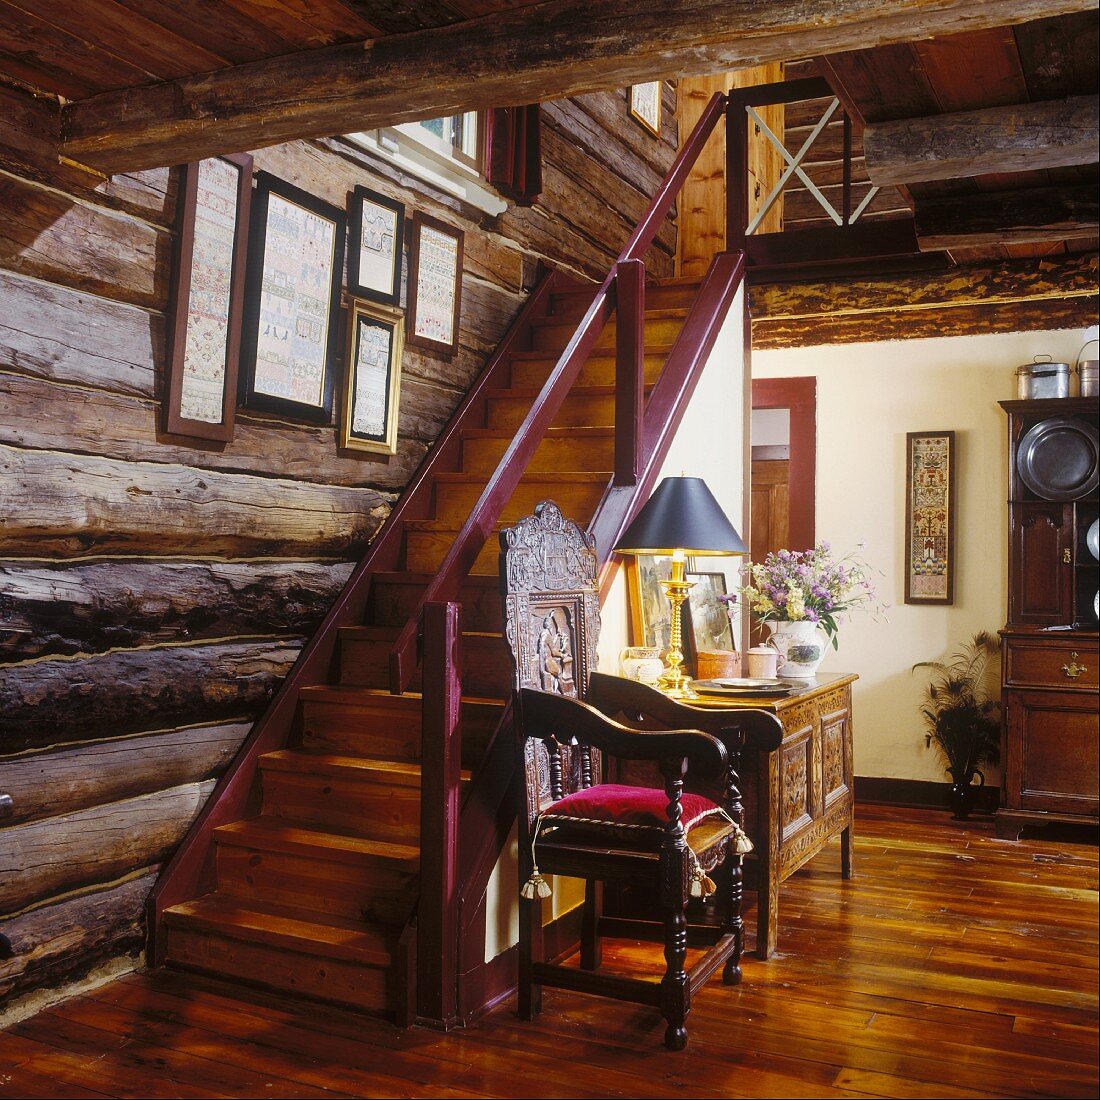 Eingangsbereich eines Bauernhauses mit einem kunstvoll geschnitzten Stuhl an der Treppe